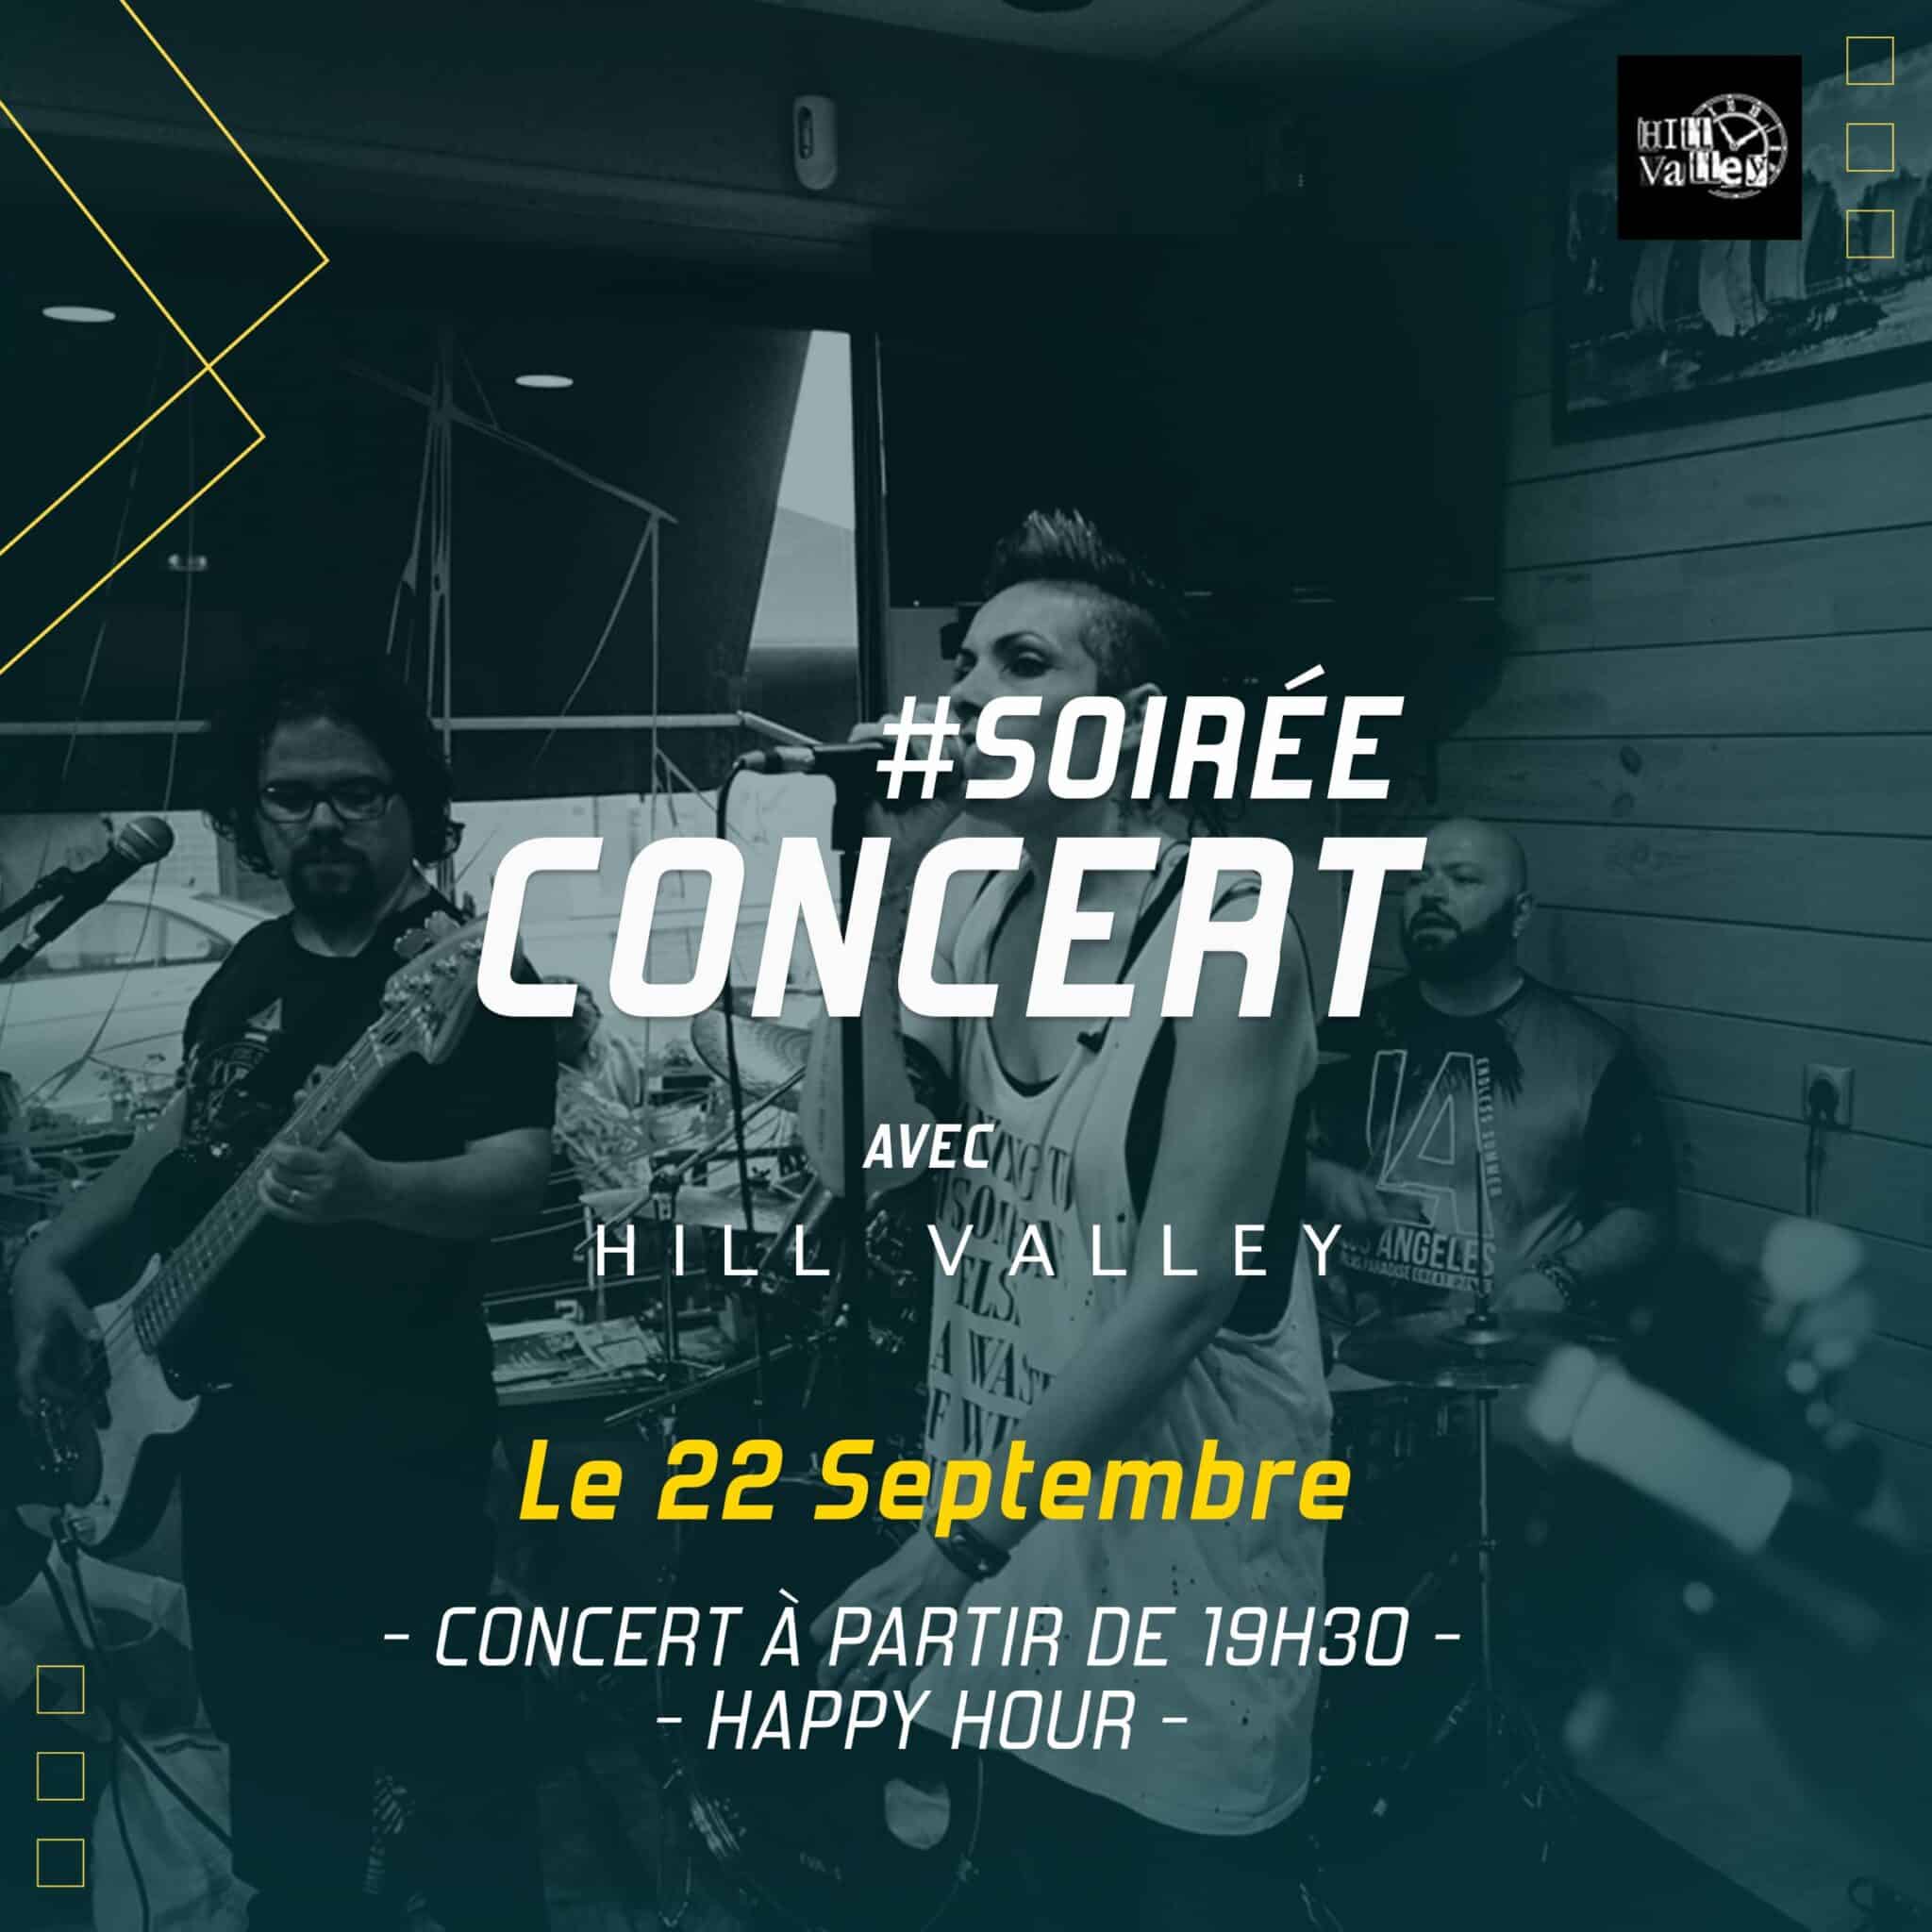 Concert avec Hill Valley vendredi 22 septembre à Vertical'Art Orléans